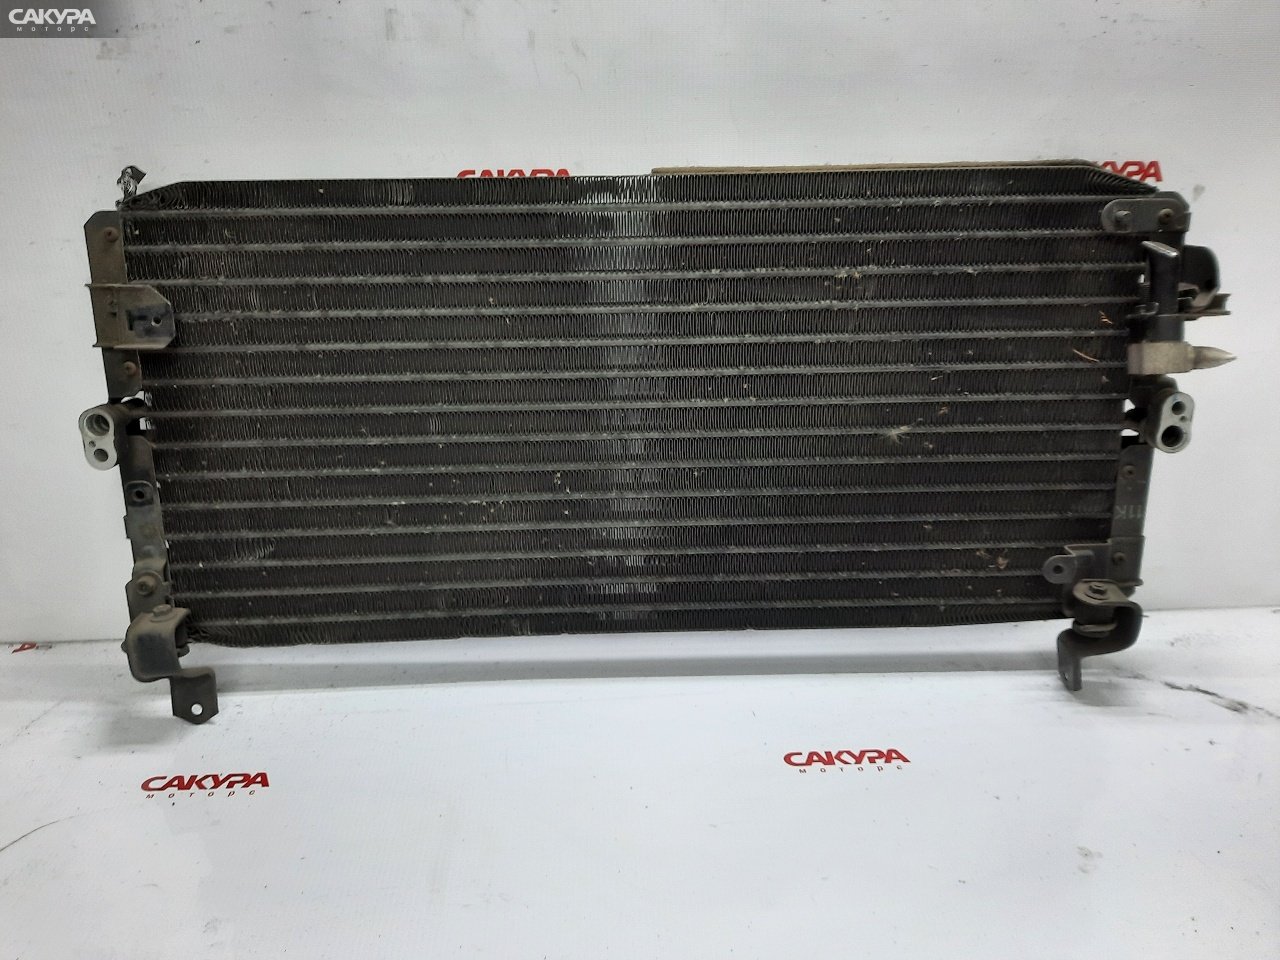 Радиатор кондиционера Toyota Carina AT170 5A-FE: купить в Сакура Красноярск.